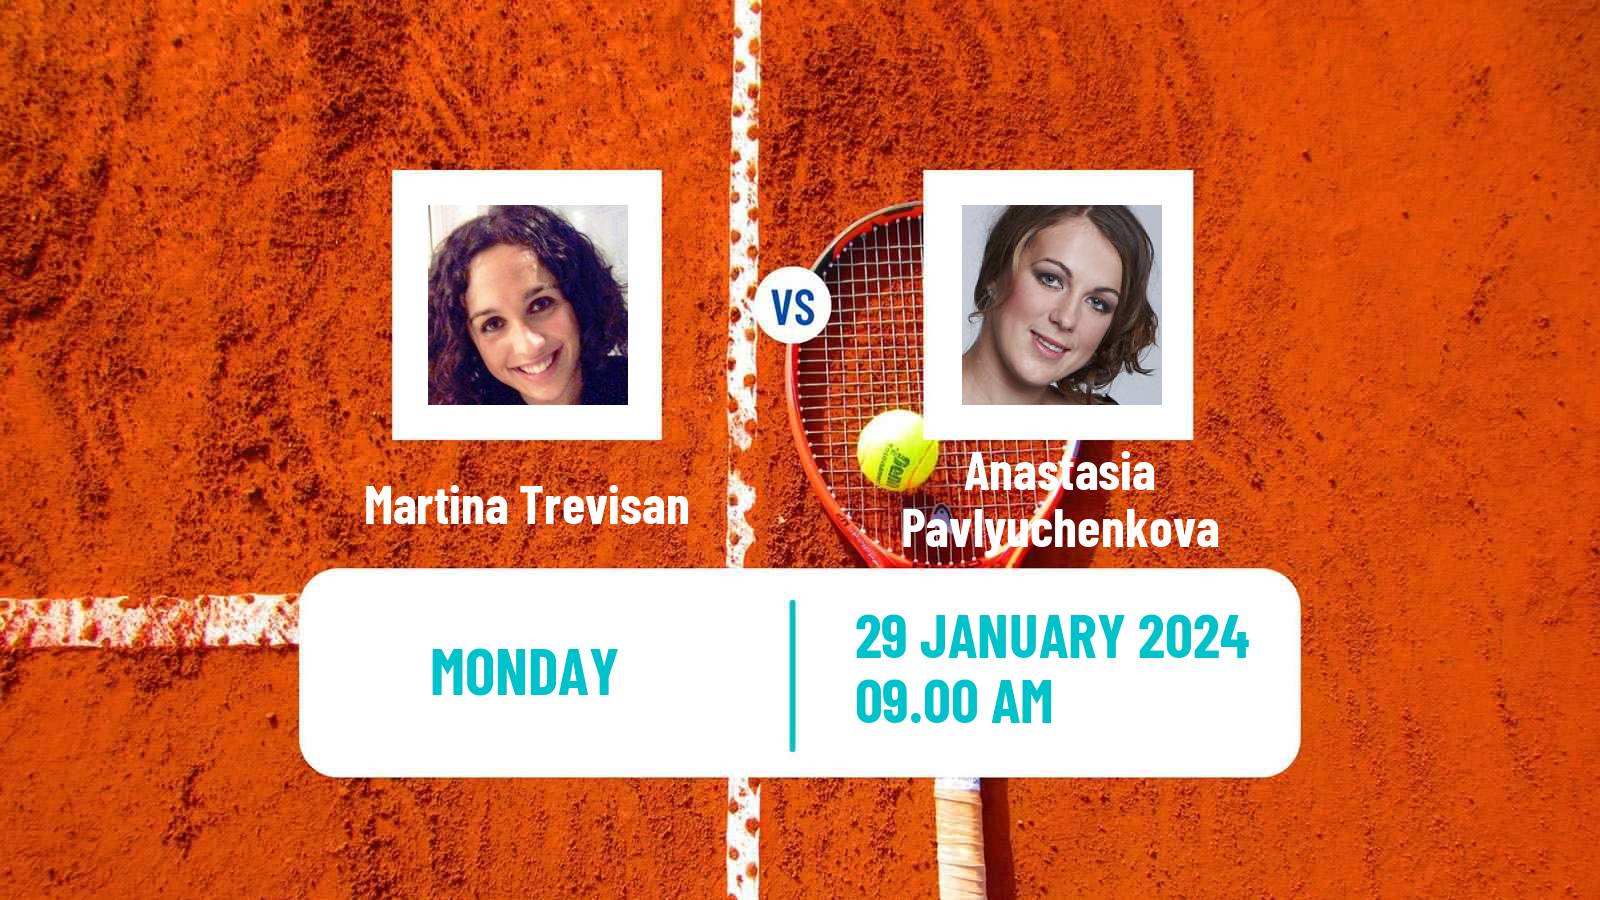 Tennis WTA Linz Martina Trevisan - Anastasia Pavlyuchenkova